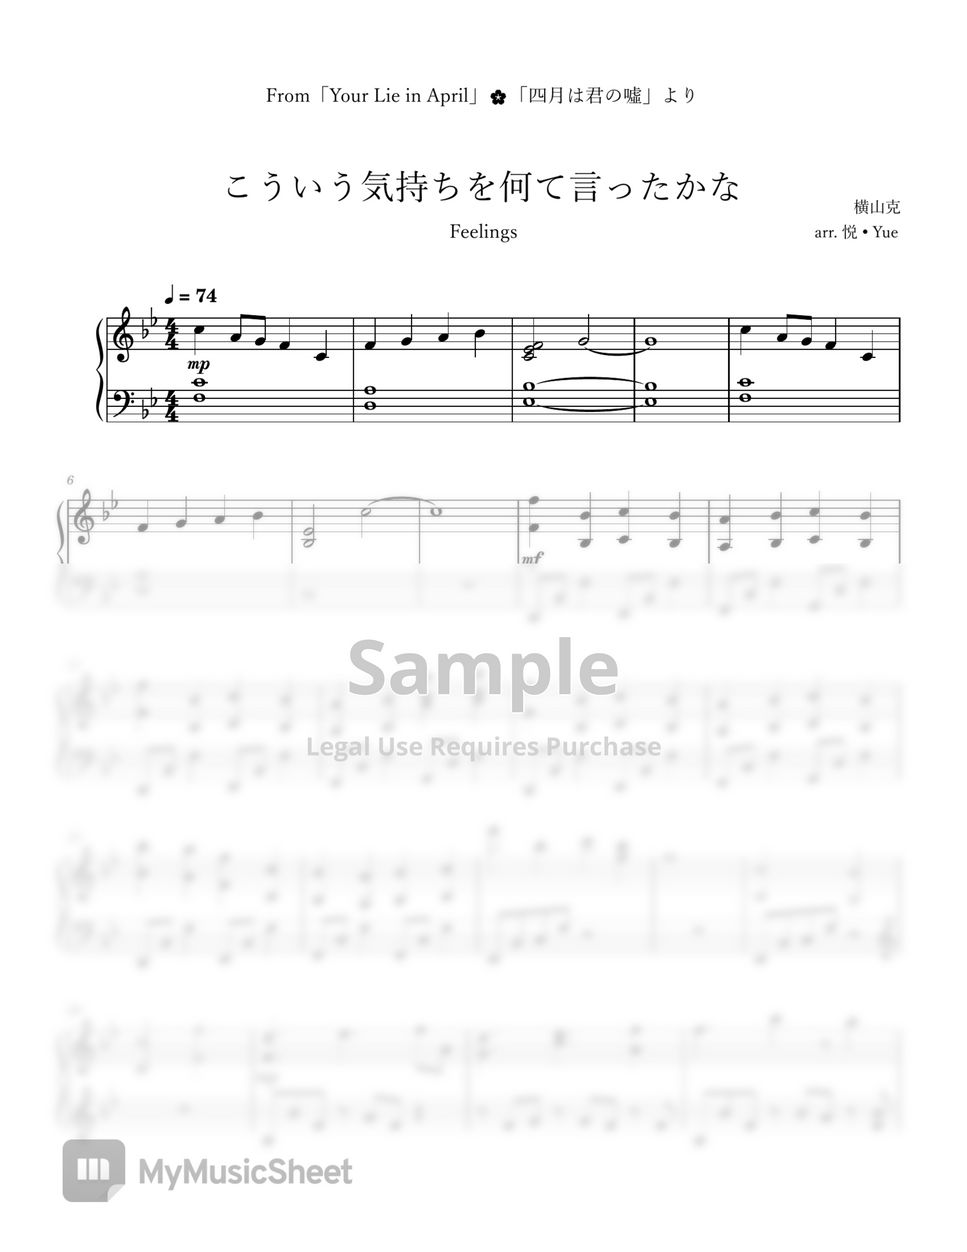 Masaru Yokoyama - Your Lie in April「Feelings / こういう気持ちを何て言ったかな」(Kouiu Kimochi wo Nante Ittakana) Piano by 悦 • Yue